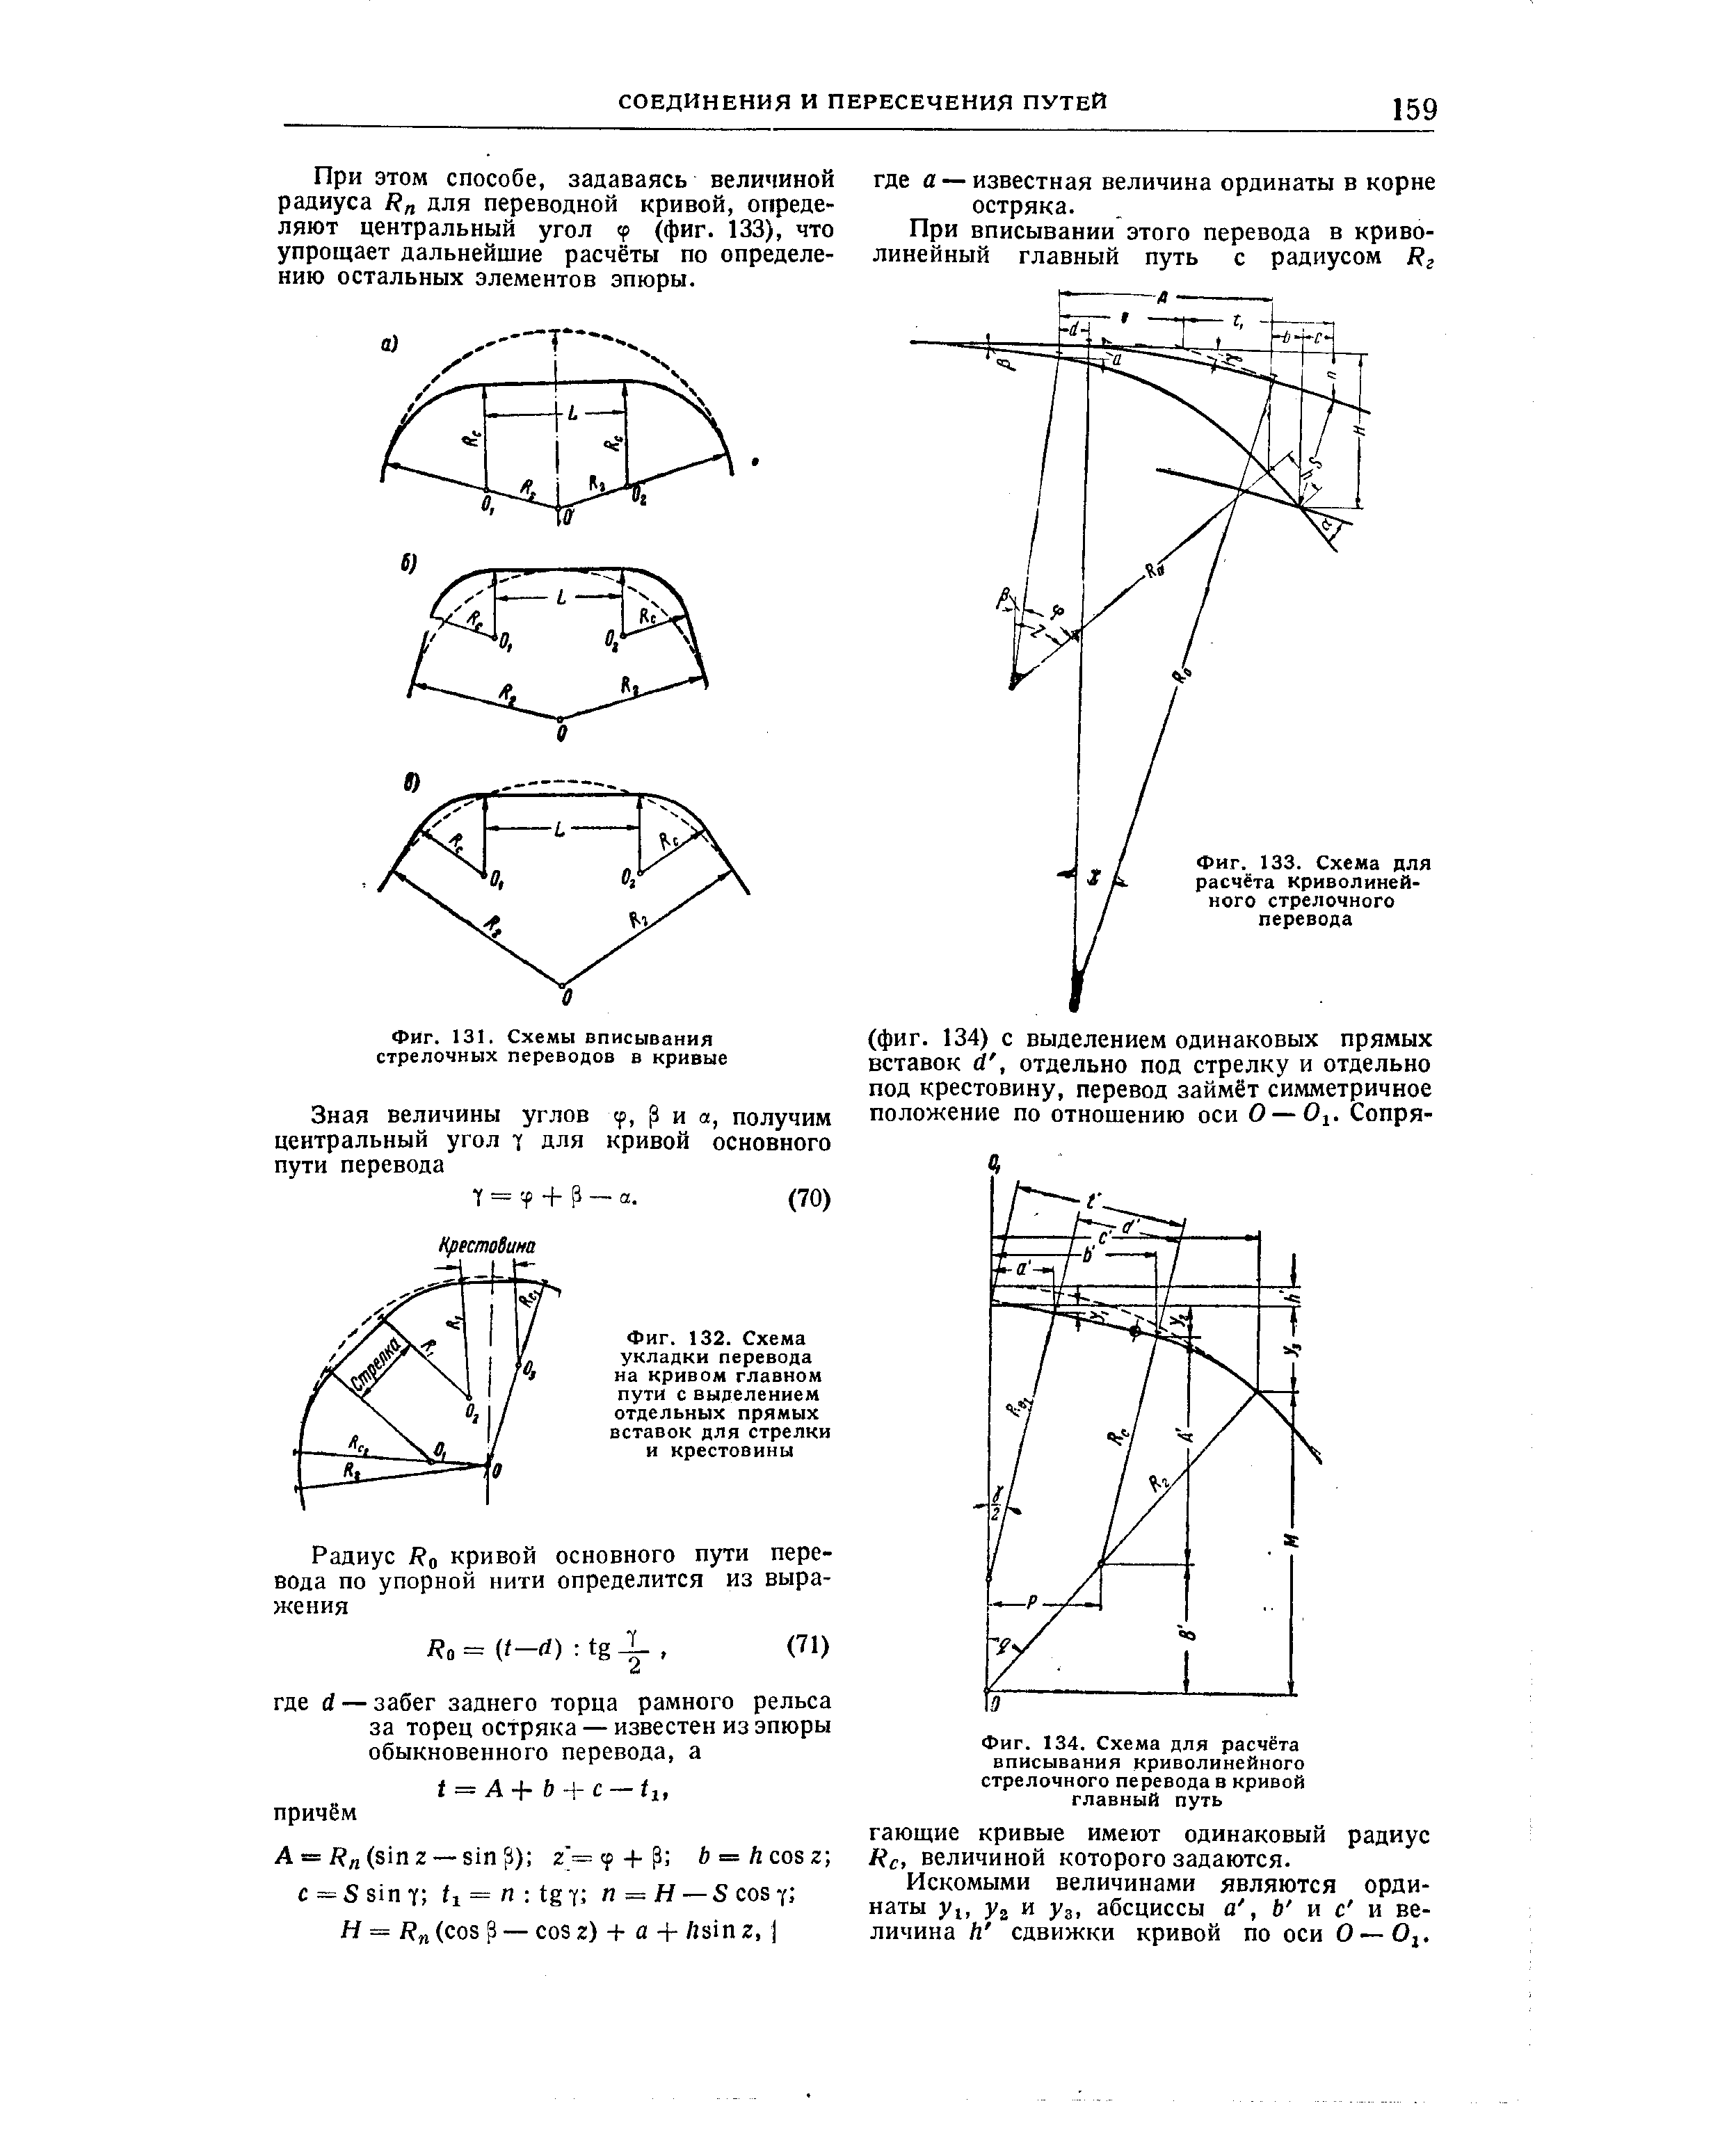 Фиг. 134. Схема для расчёта вписывания криволинейного стрелочного перевода в кривой главный путь
